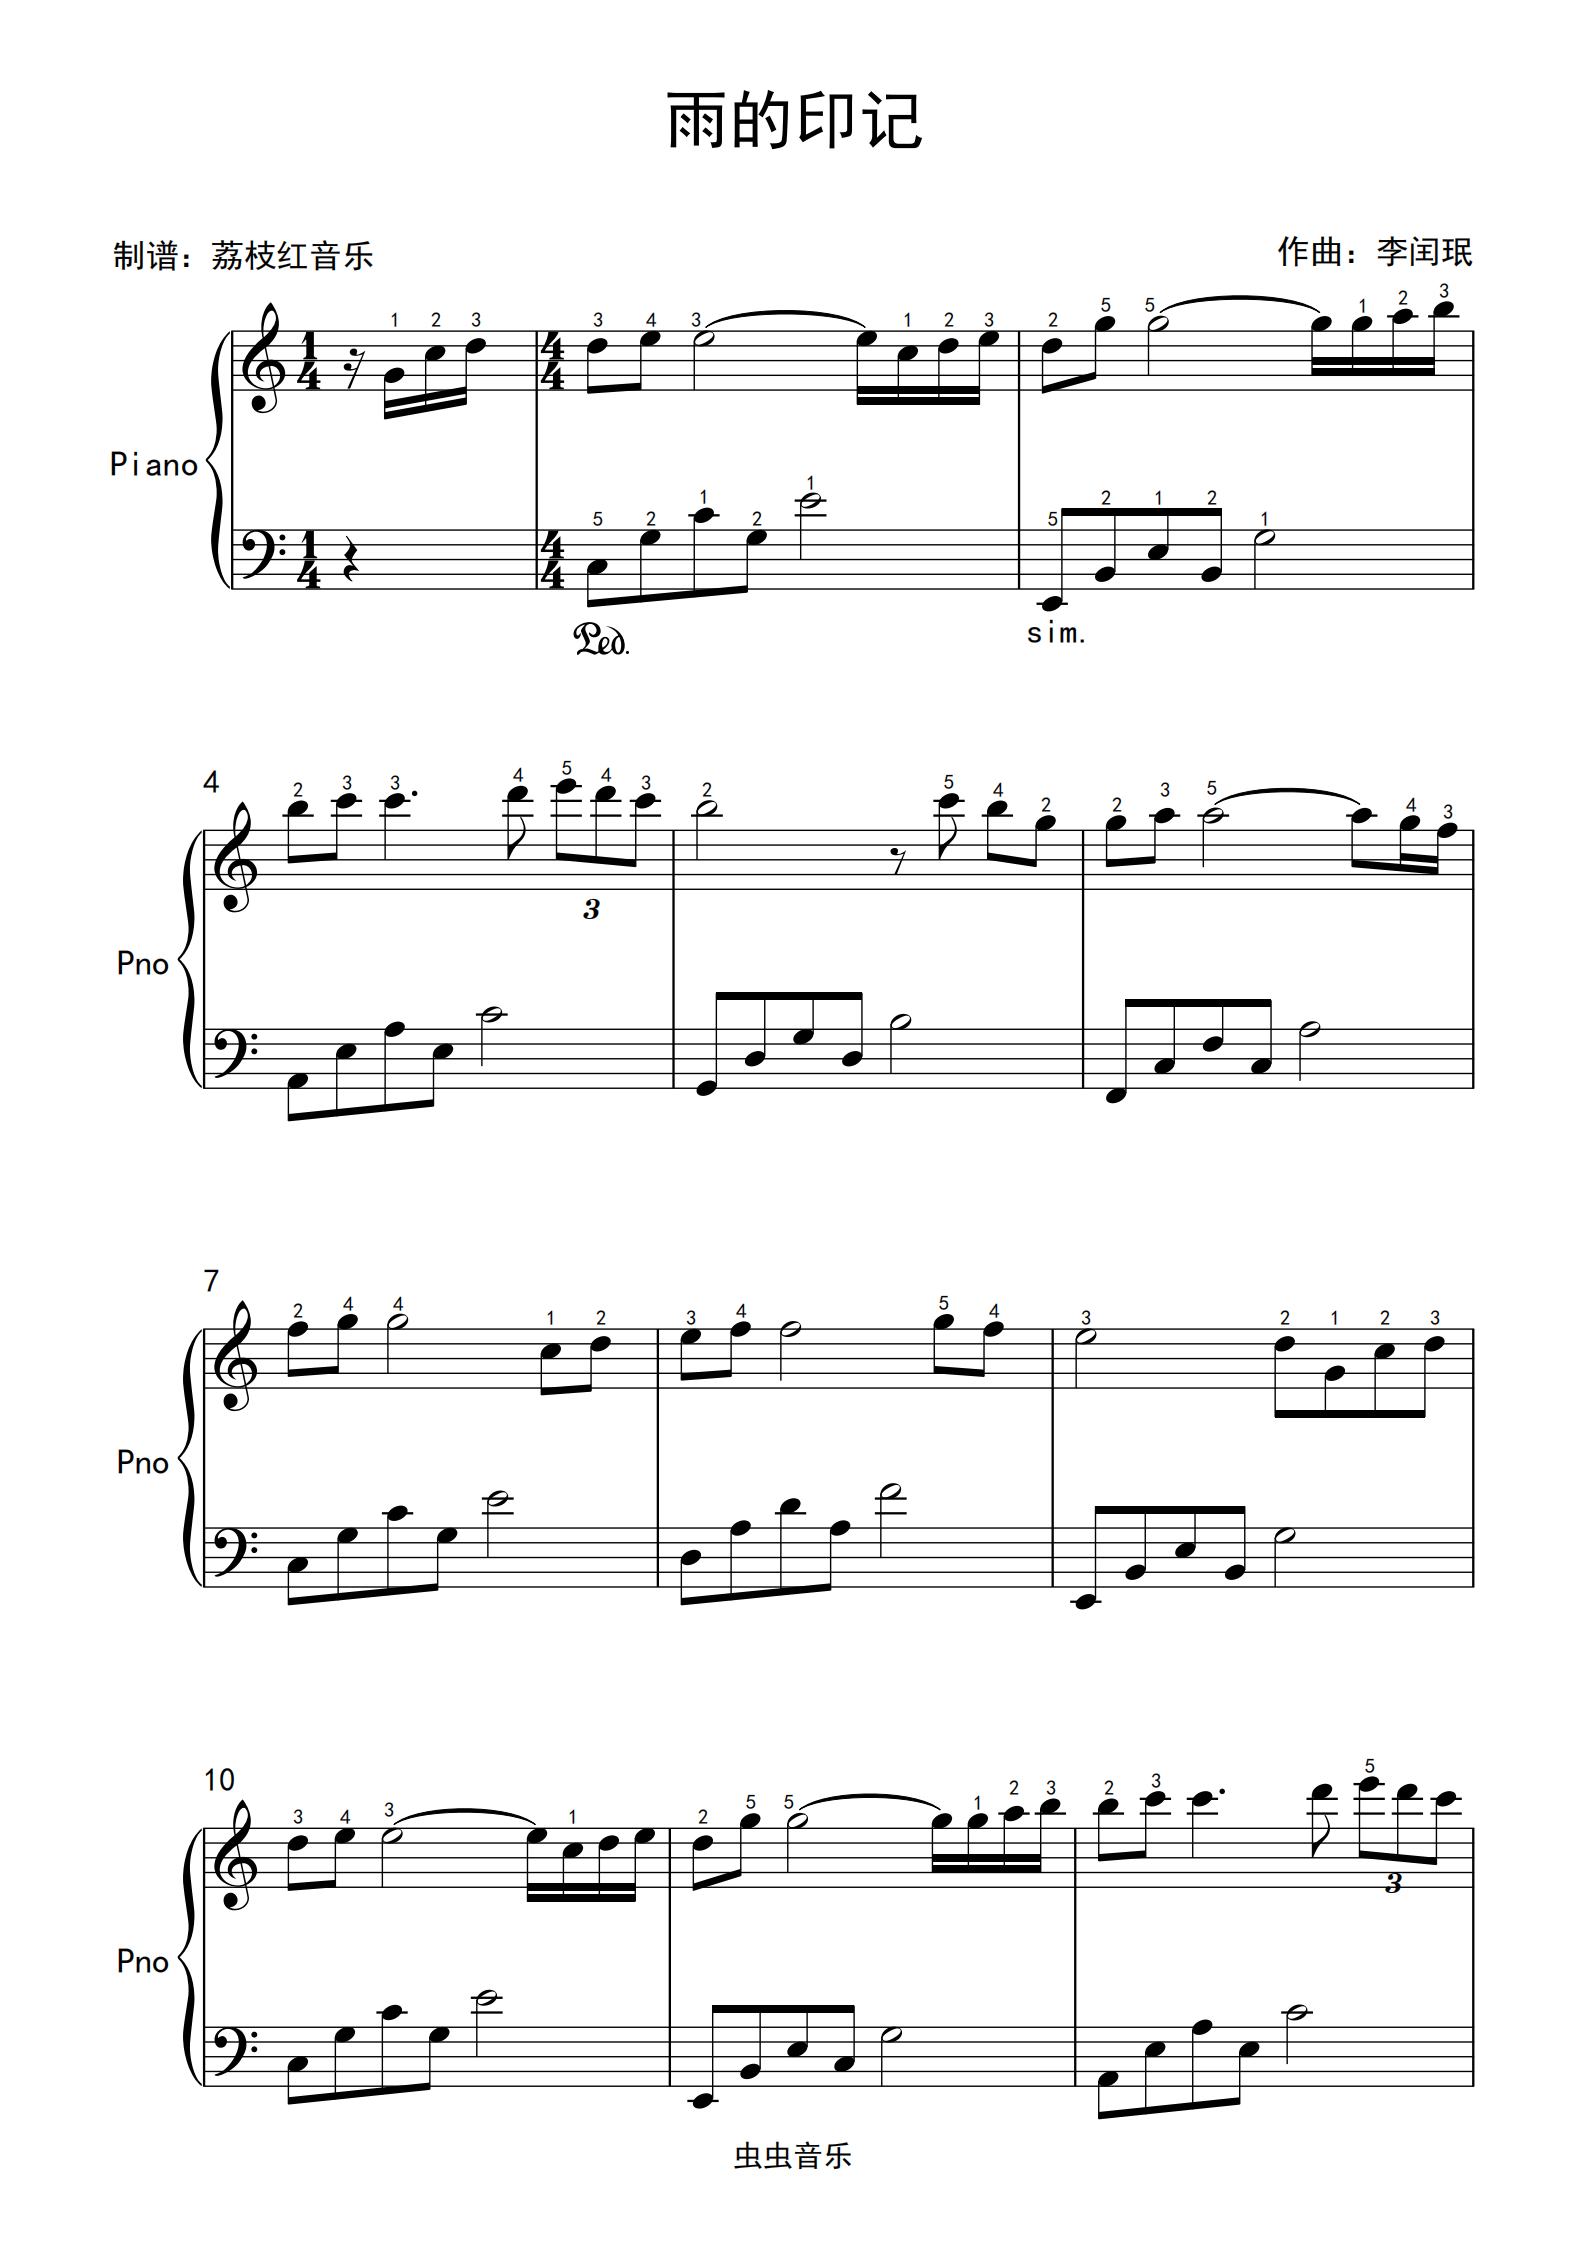 晚夜微雨问海棠-完美版-钢琴谱文件（五线谱、双手简谱、数字谱、Midi、PDF）免费下载